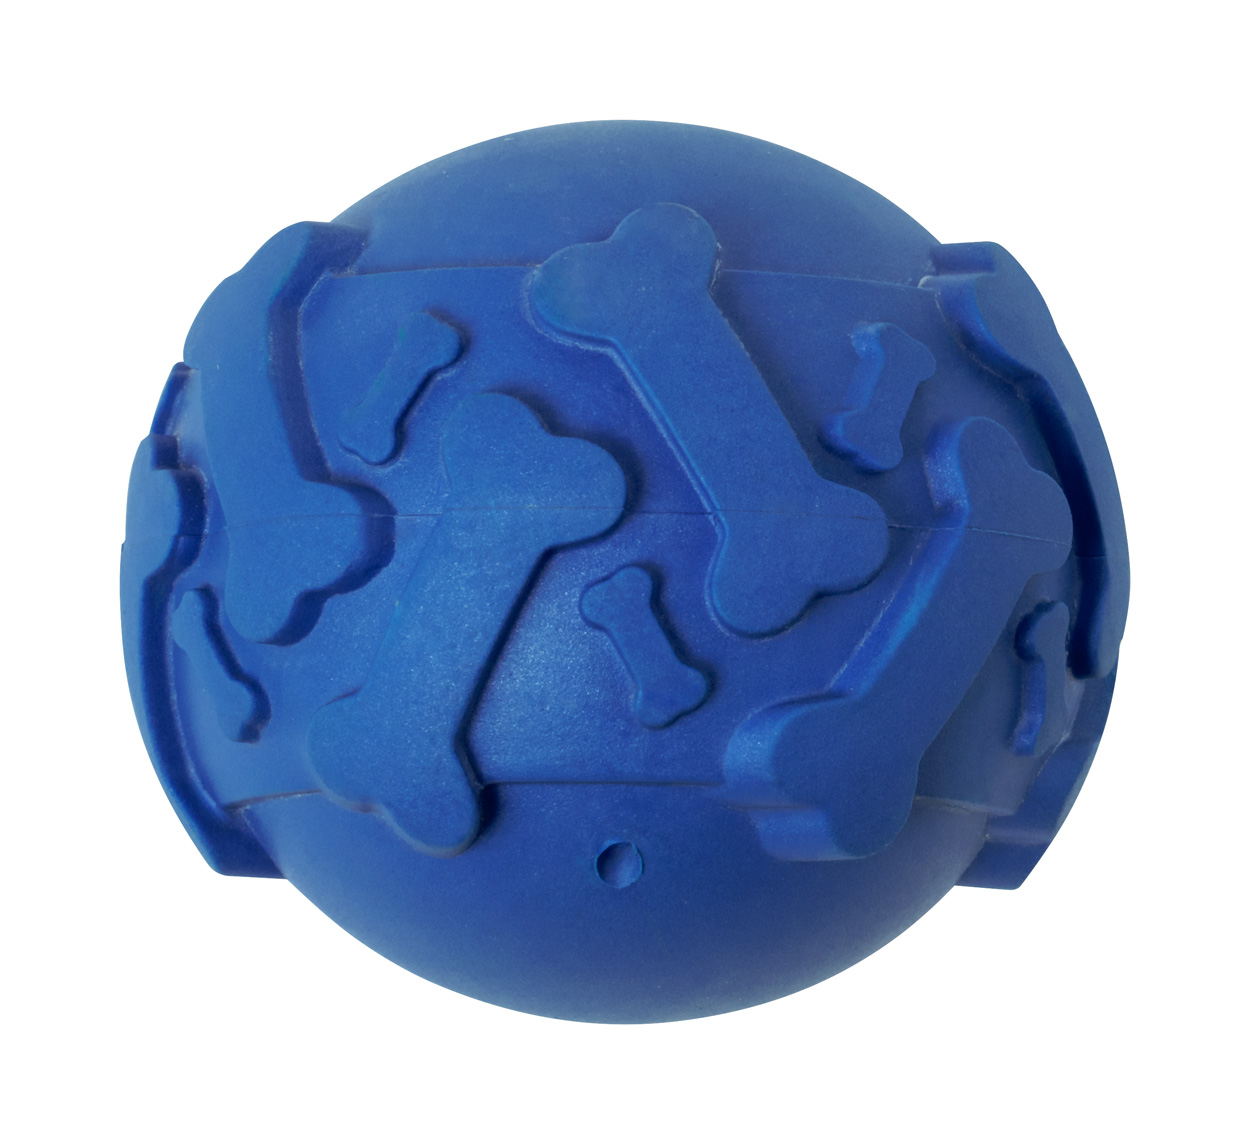 Bigel dog ball - blau